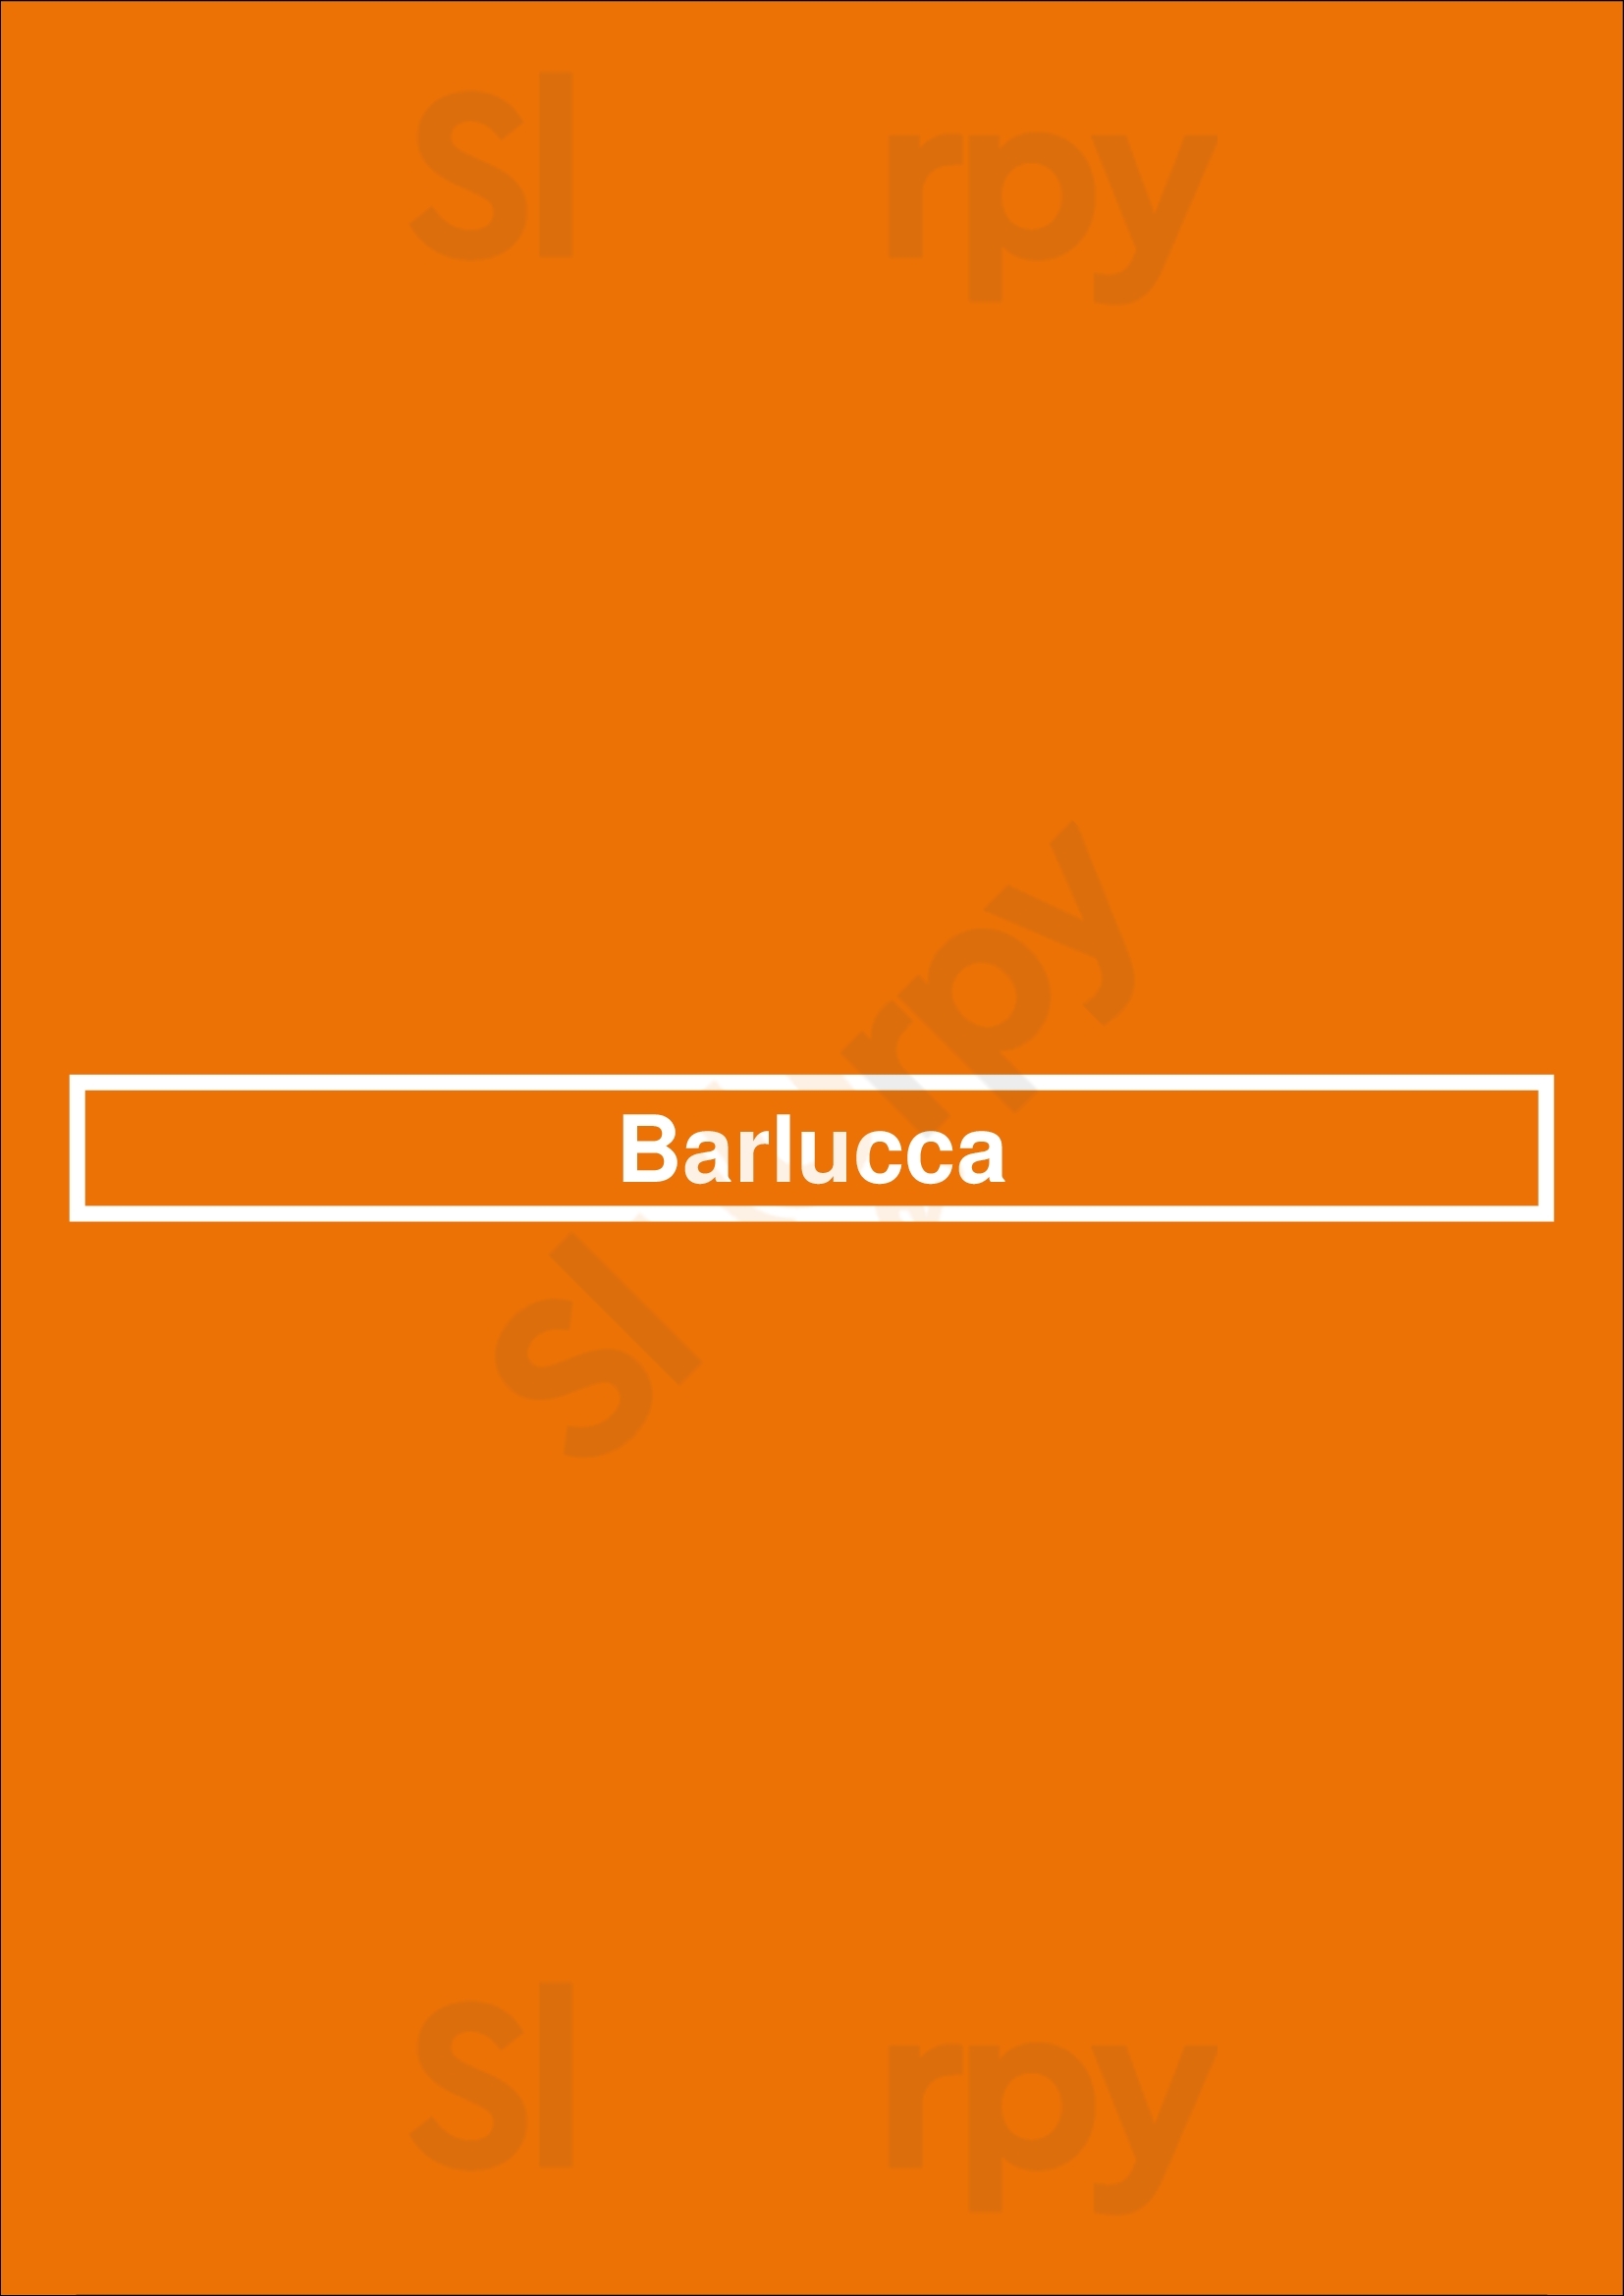 Barlucca Breda Menu - 1